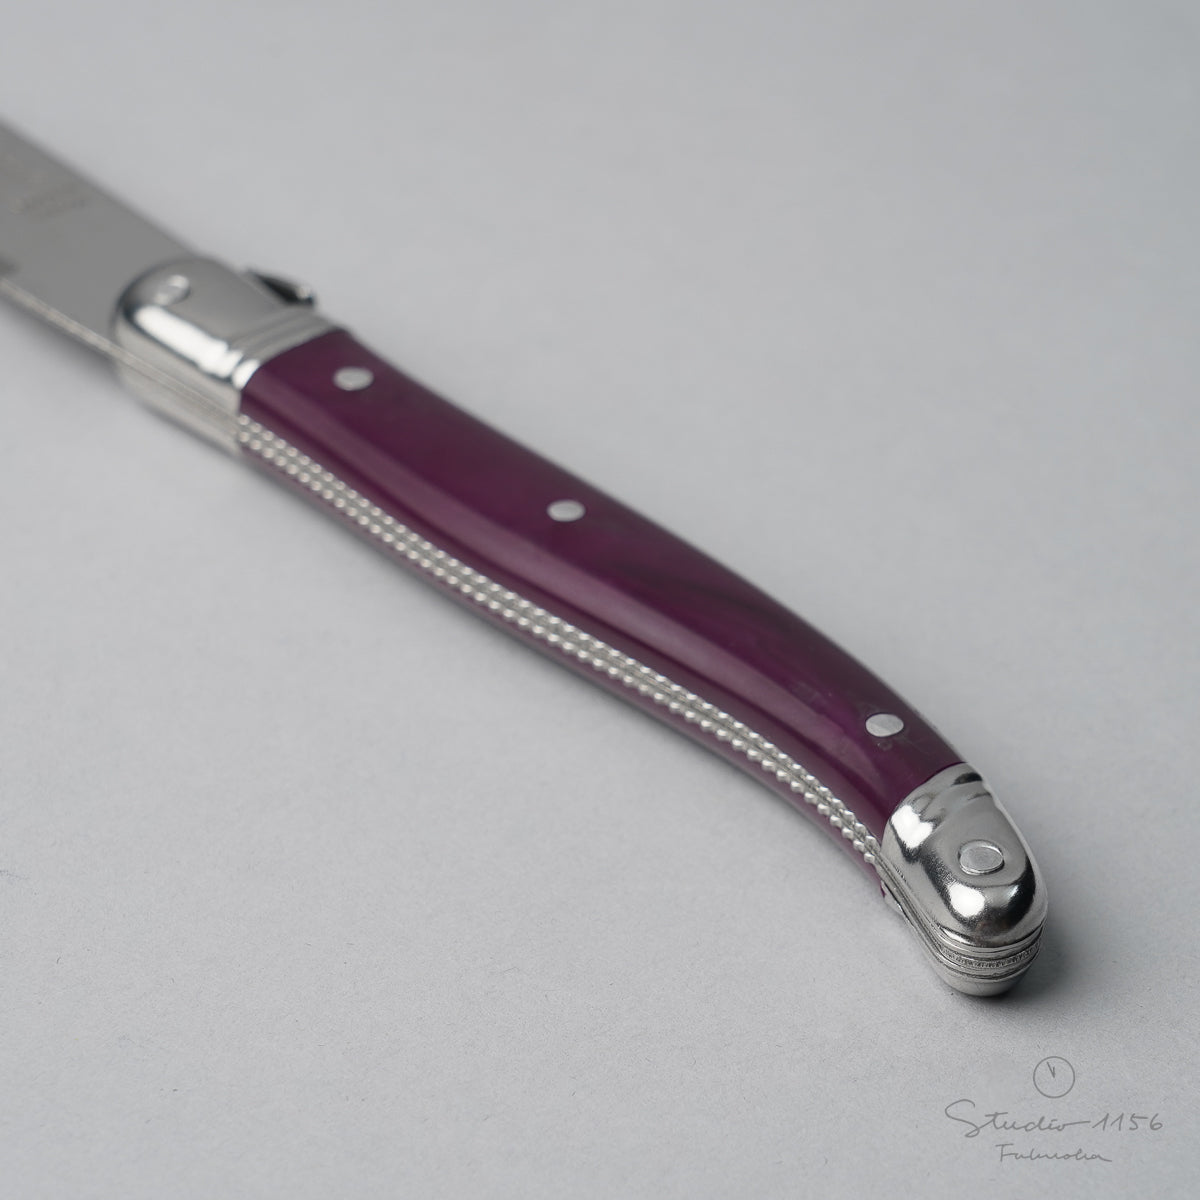 ジャン・ネロン ライヨール ステーキナイフ 23cm Cutlery-neron Studio1156